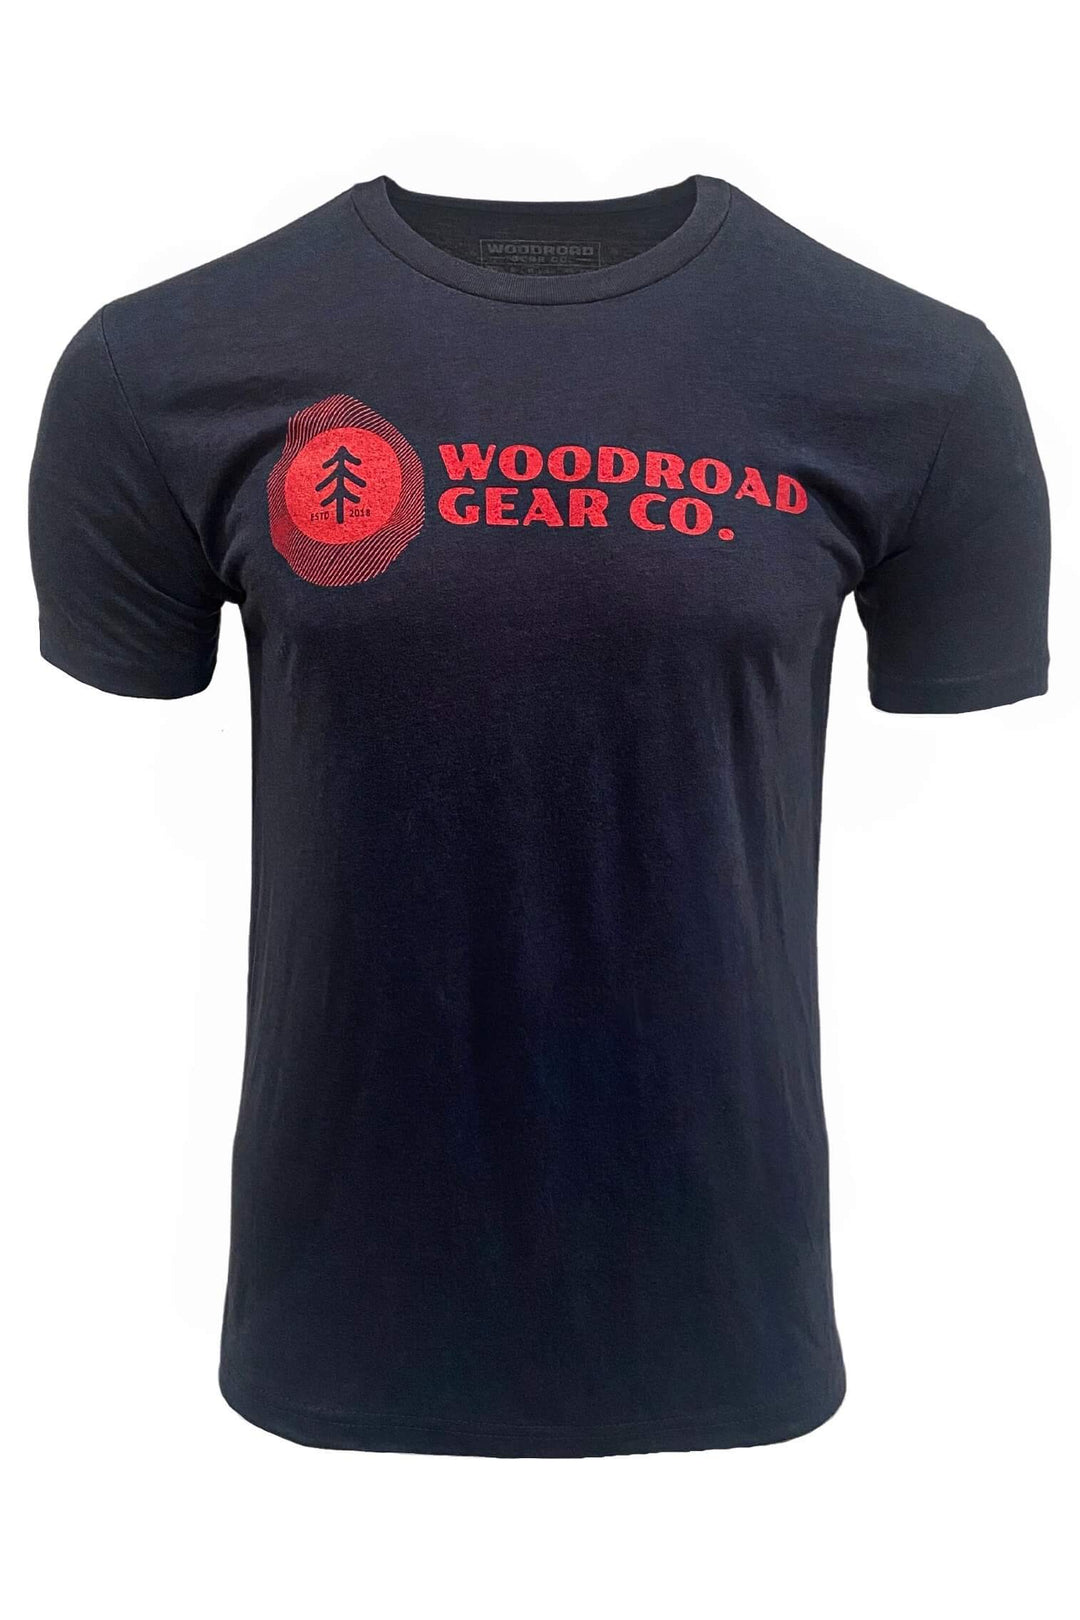 Woodroad Tree T-shirt - Woodroad Gear Co.